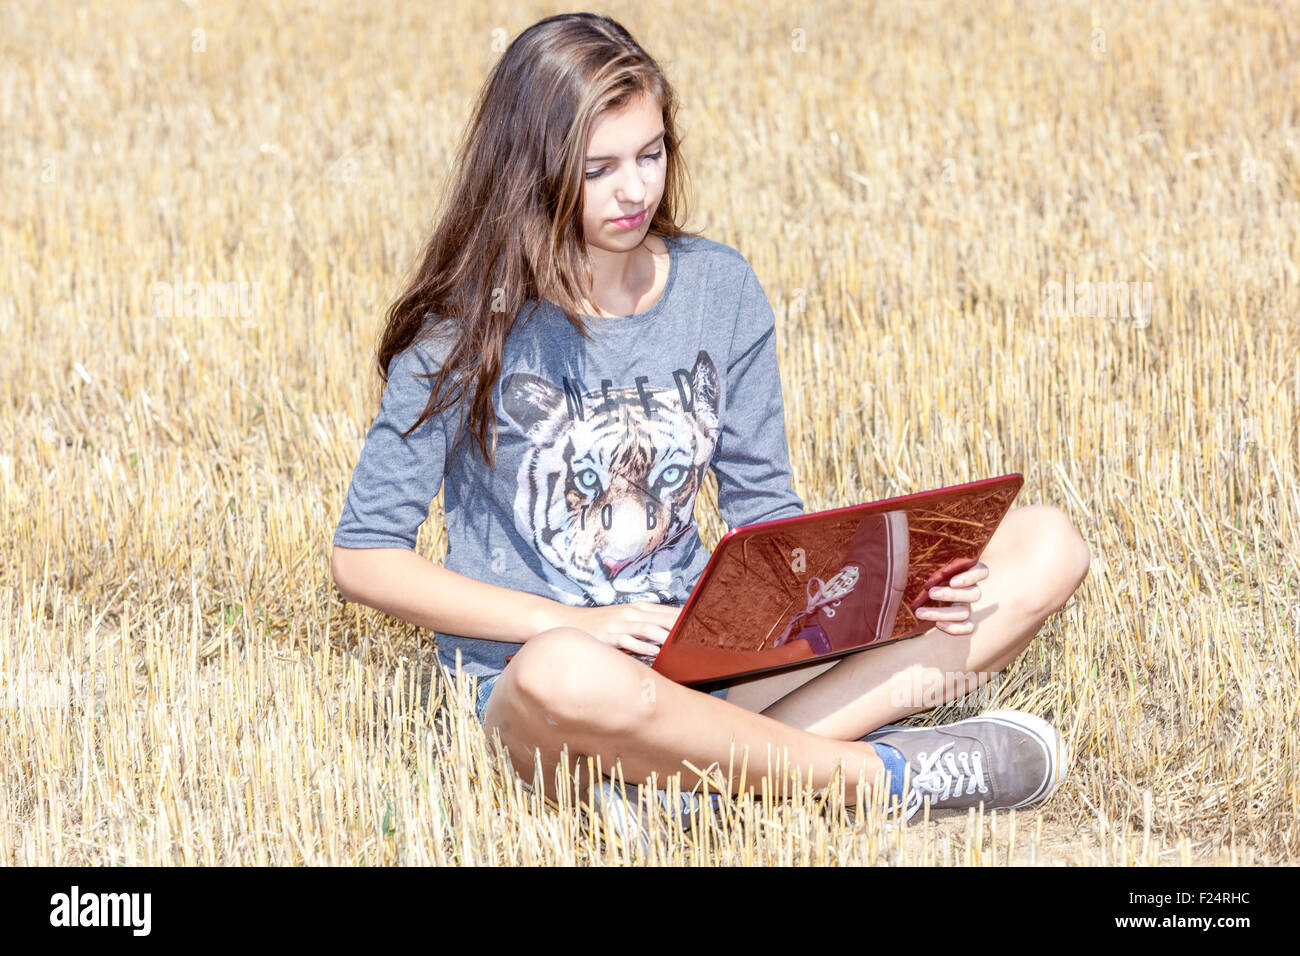 Junger Teenager mit Notebook, Teenager-Mädchen mit Laptop auf einem Stoppelfeld, Globale Kommunikation mit drahtloser Technologie, Lifestyle außerhalb des Konzepts Stockfoto